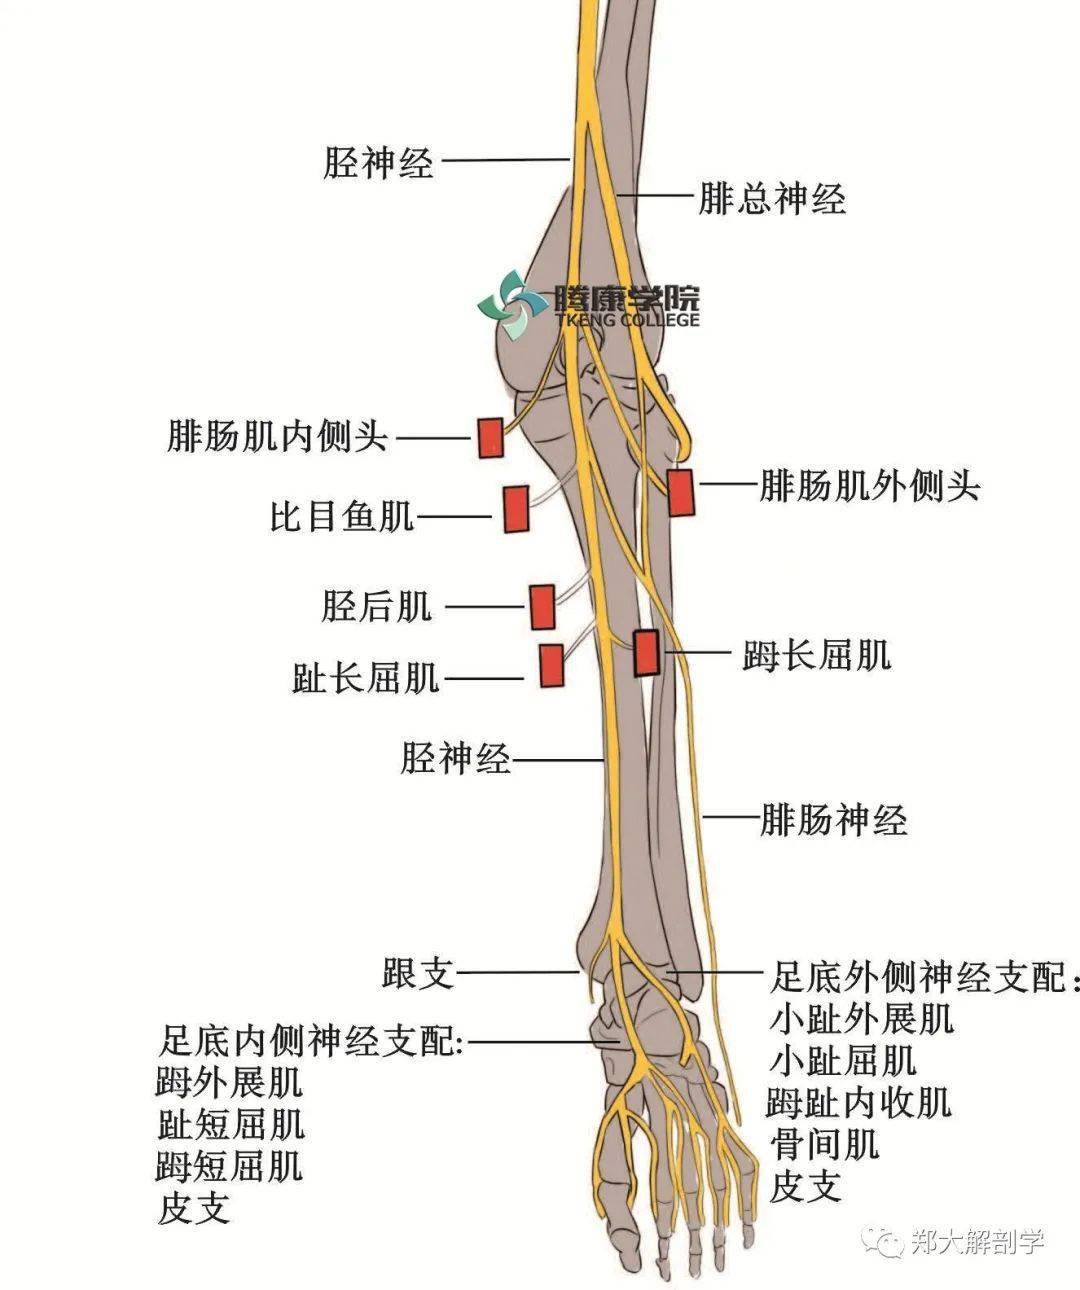 在腘窝内起自胫神经,于腓肠肌内,外侧头之间下行至小腿中部,穿筋膜达